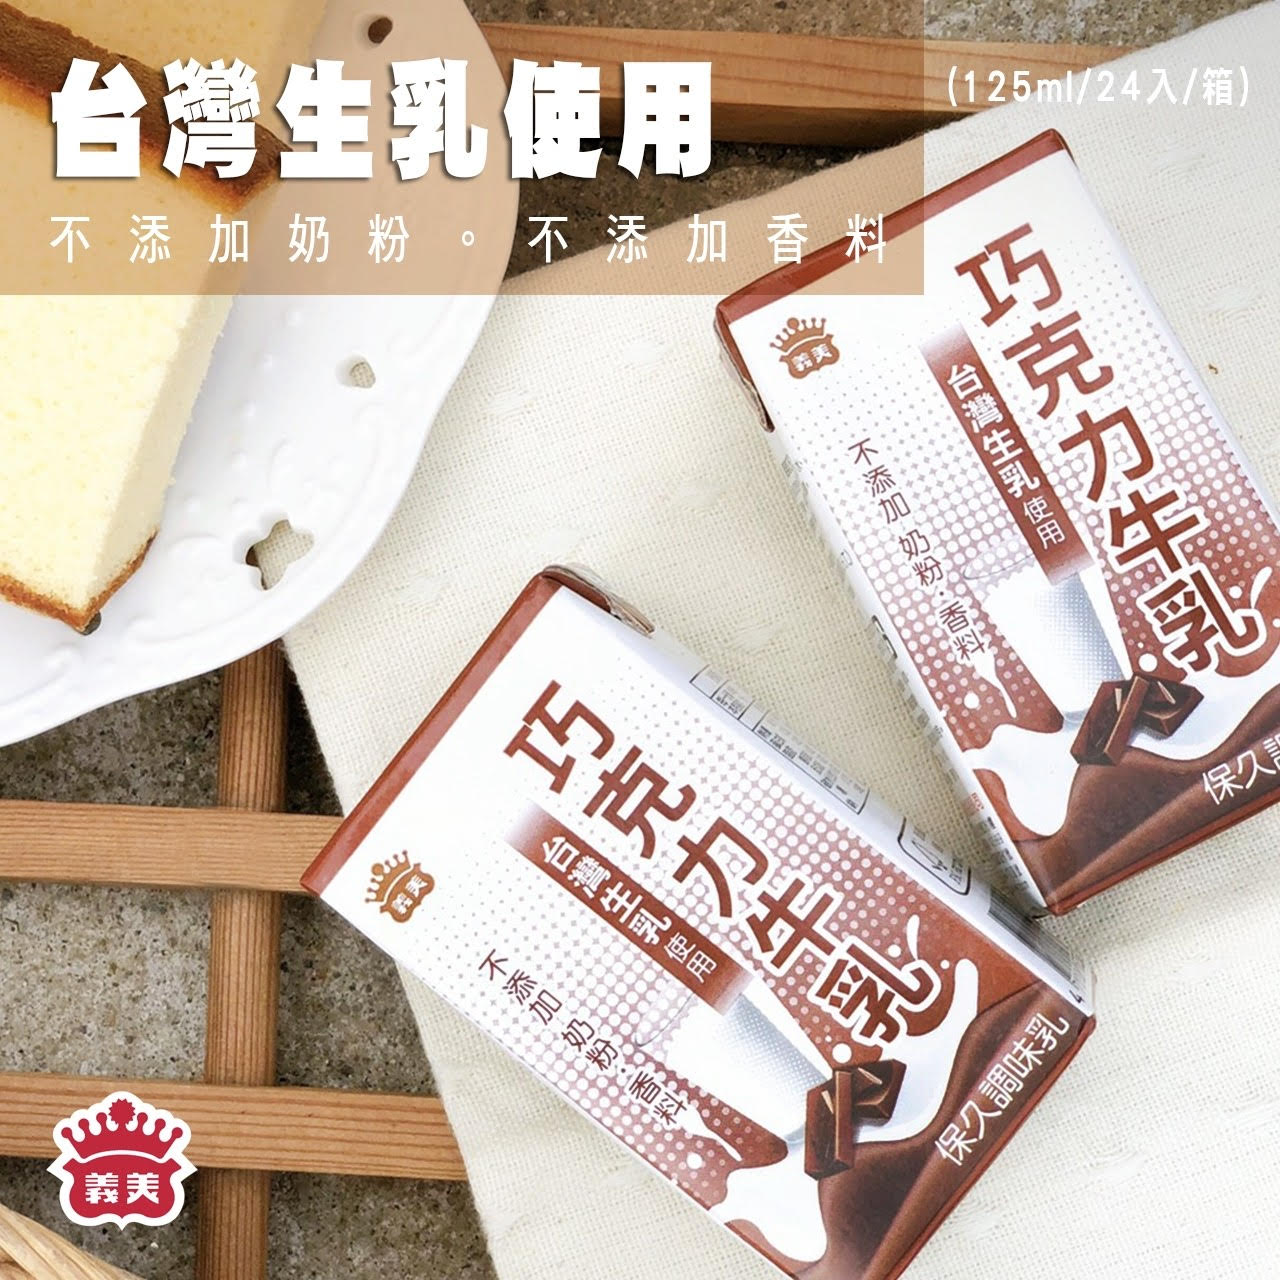 【義美】牛乳保久乳 125ml 原味保久乳 巧克力保久乳 奶類 飲品 24入/箱